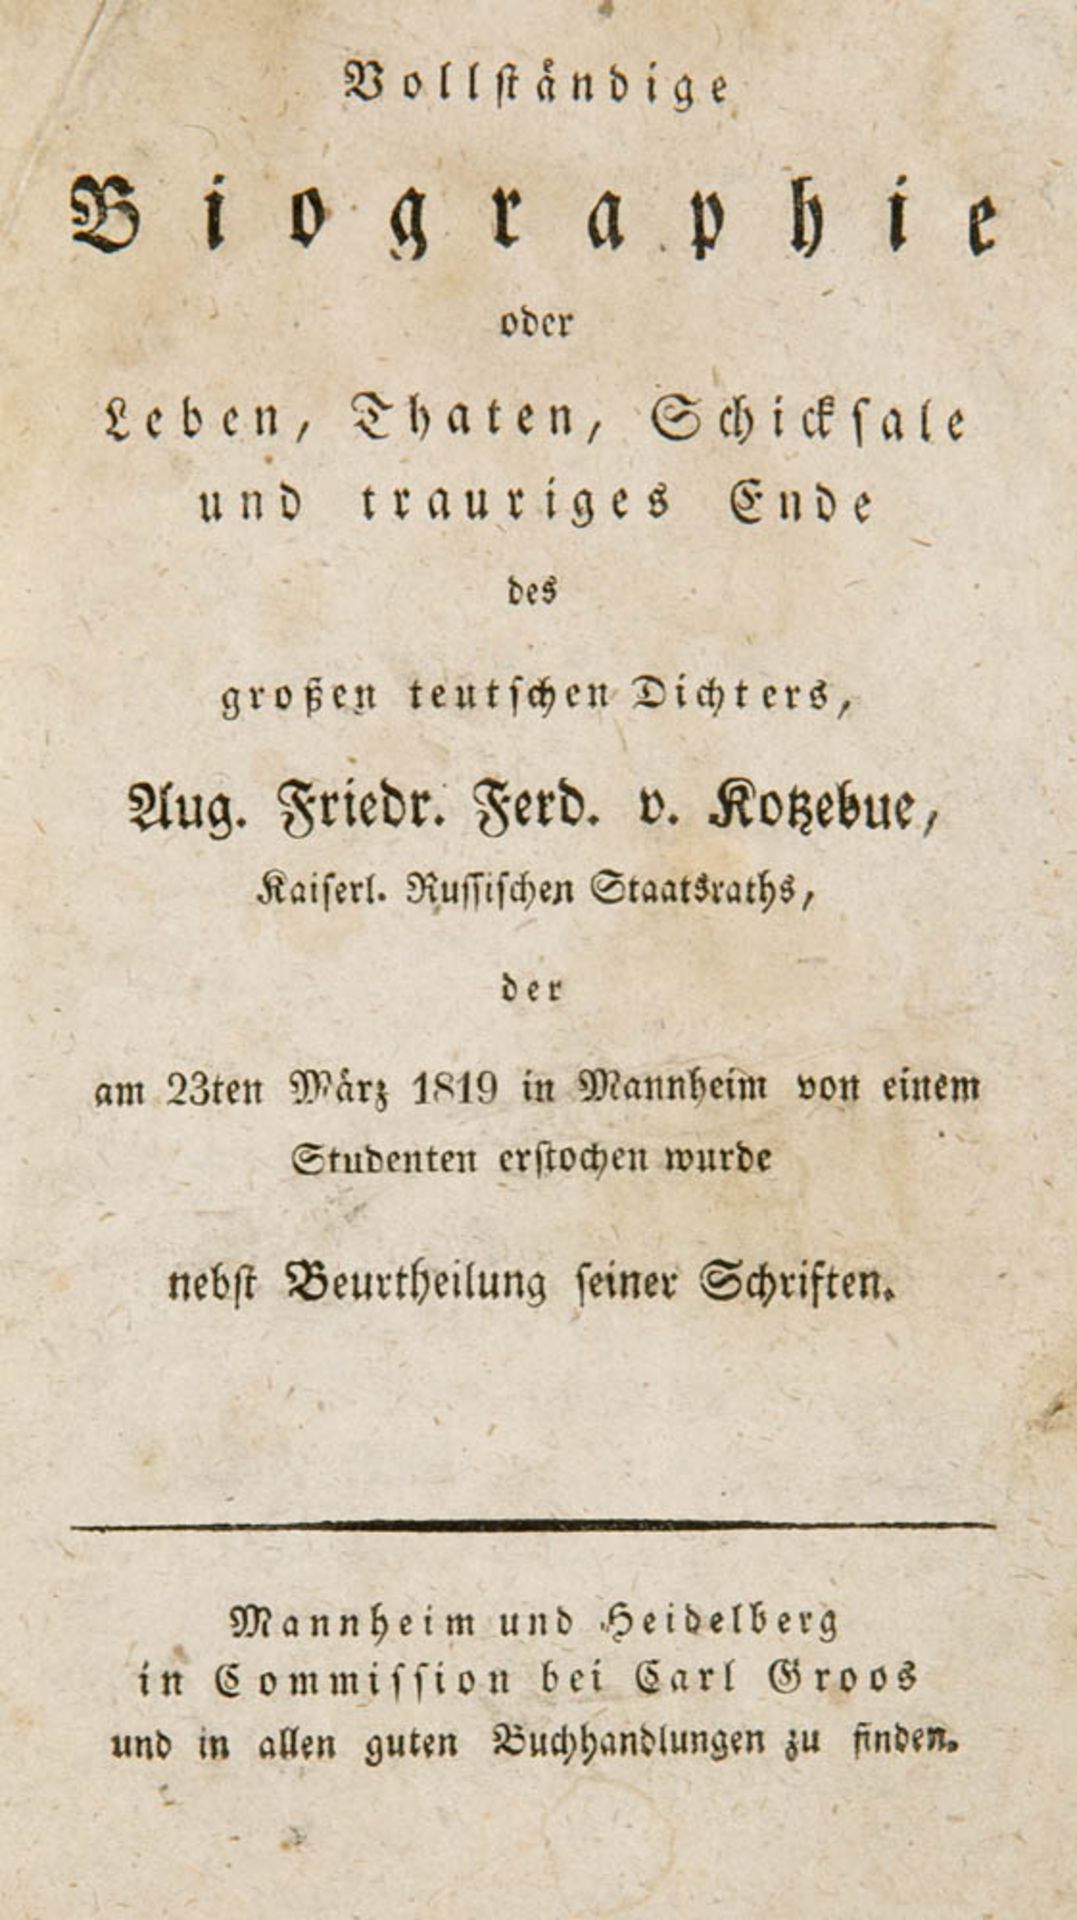 Kotzebue, Aug(ust) Friedr(ich) Ferd(inand) v(on) - (Anonymus) -. Vollständige Biographie oder Leben,